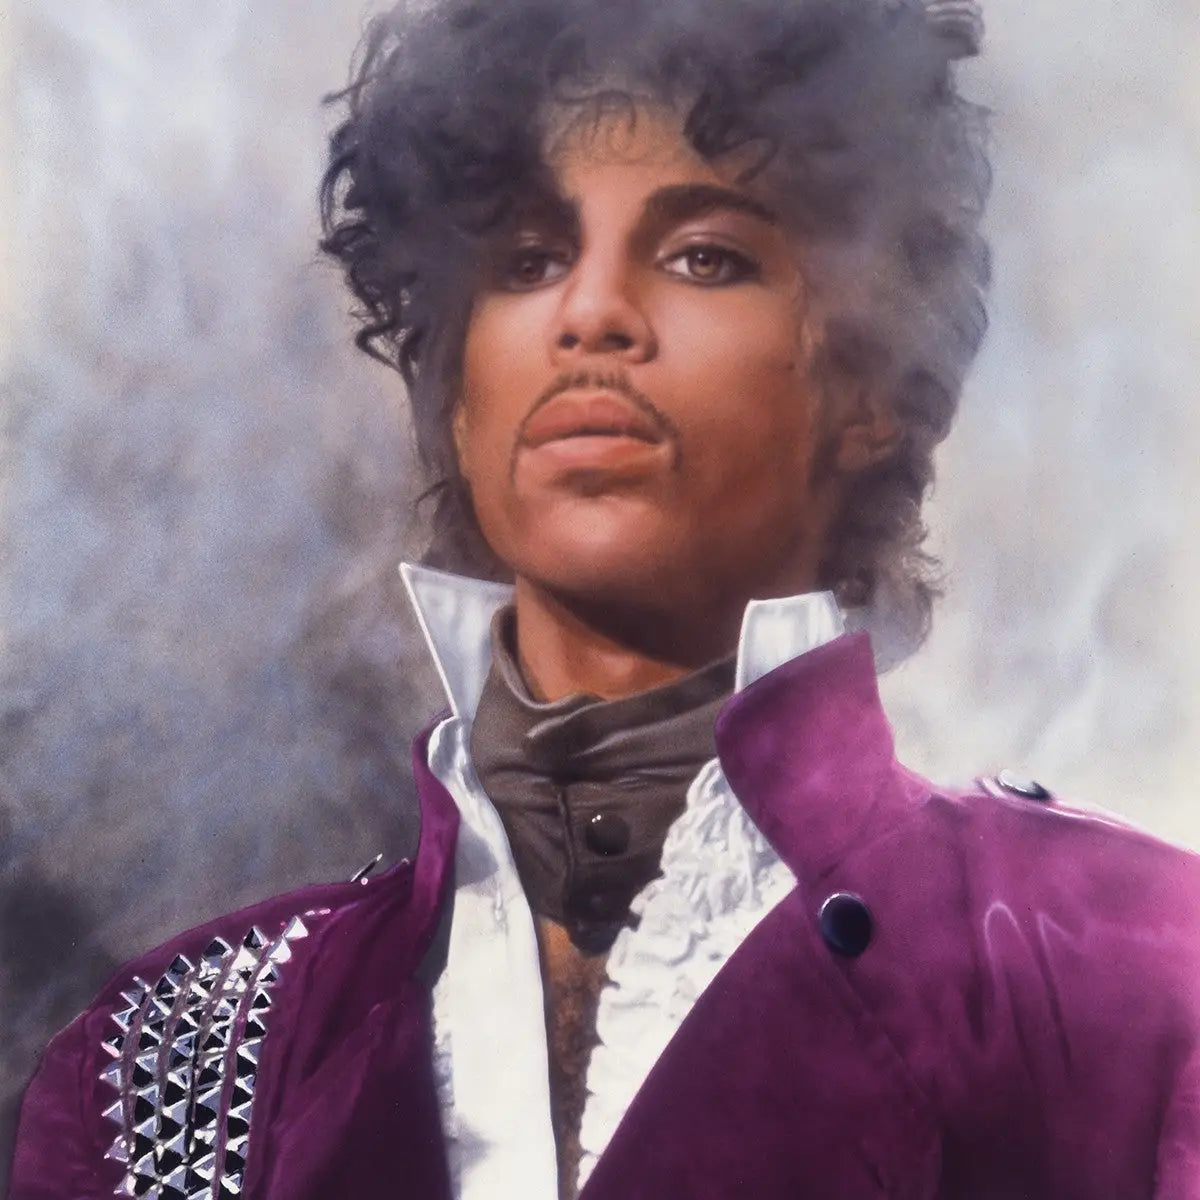 Prince – I Feel For You, I Think I Love You